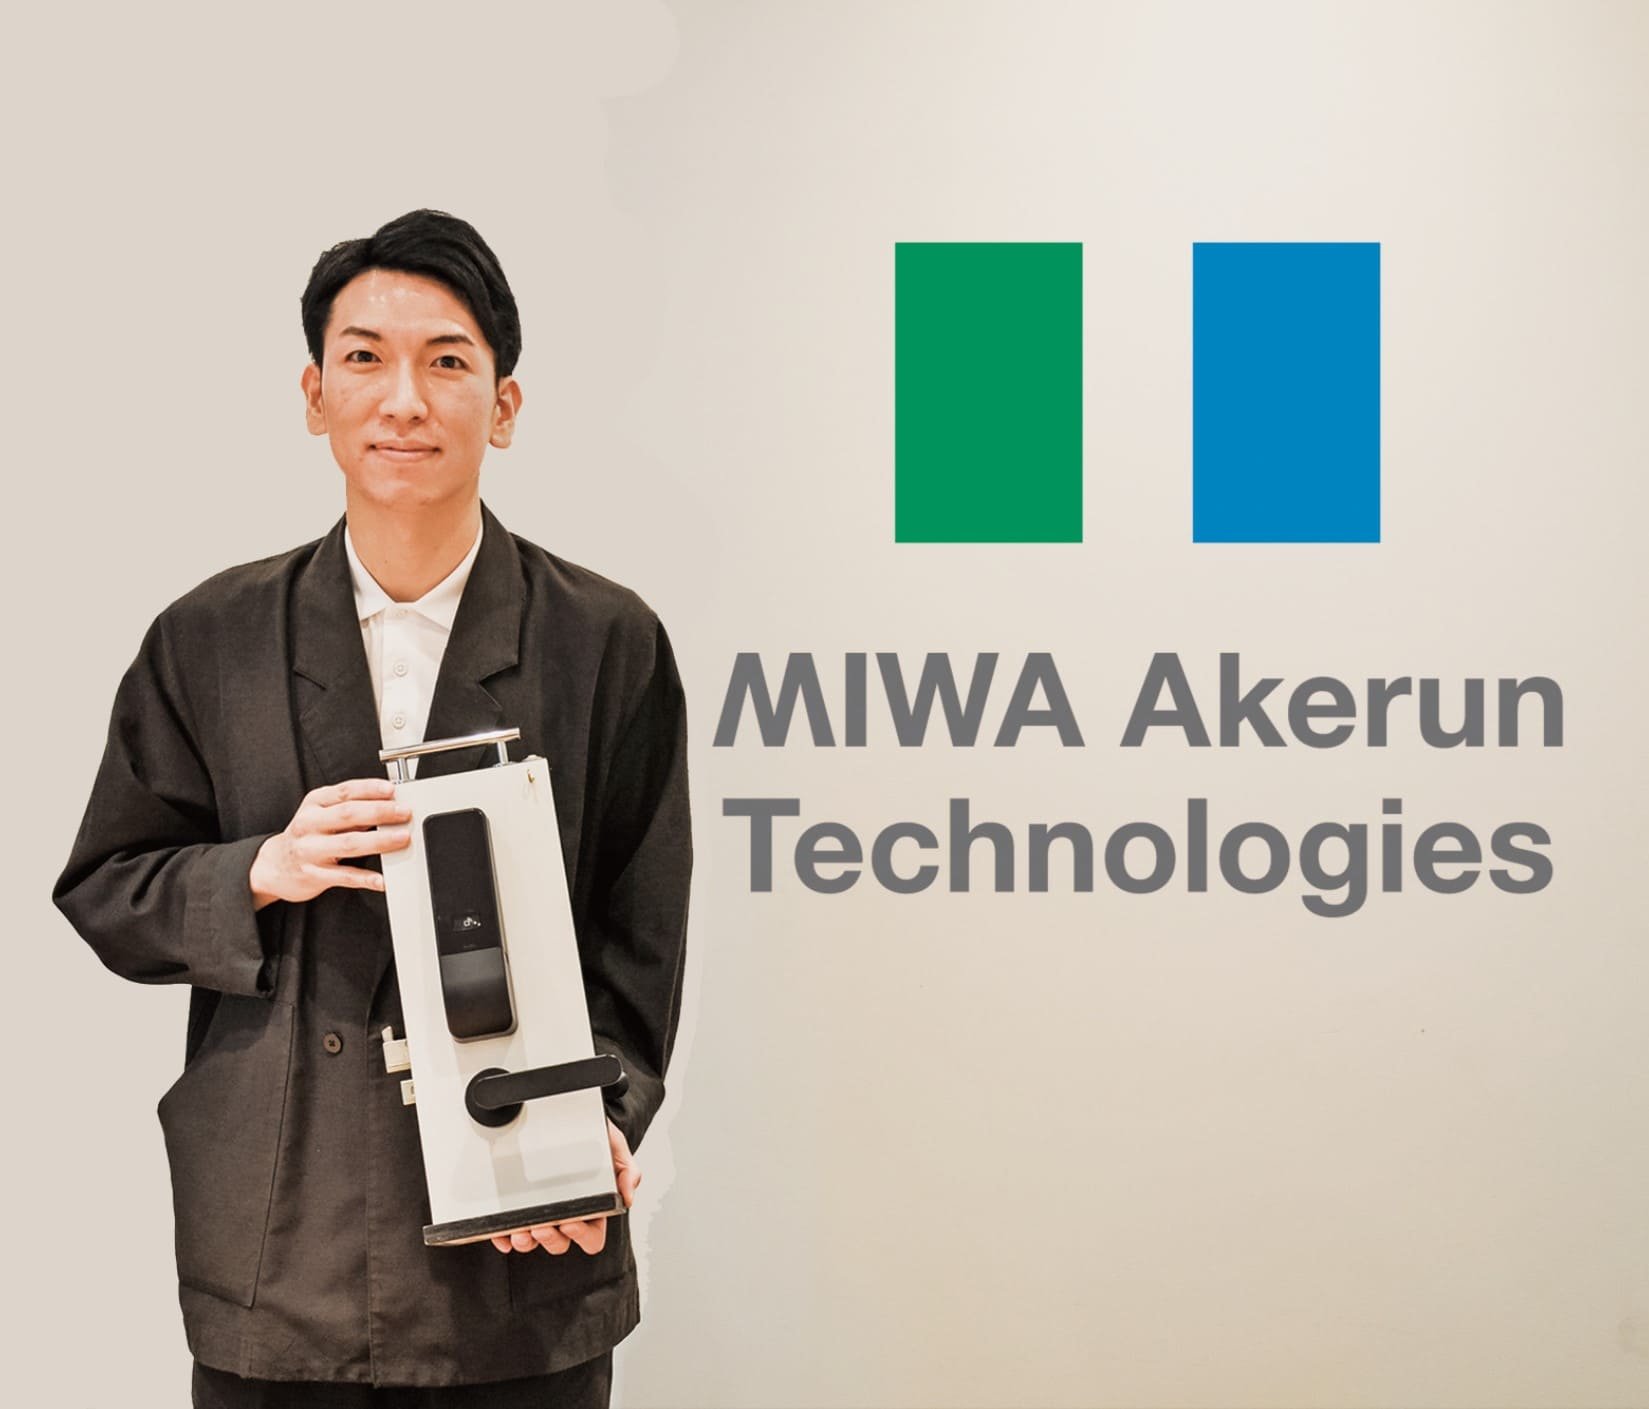 企業研究vol.165 MIWA Akerun Technologies 渡邉 宏明 社長【トップインタビュー】